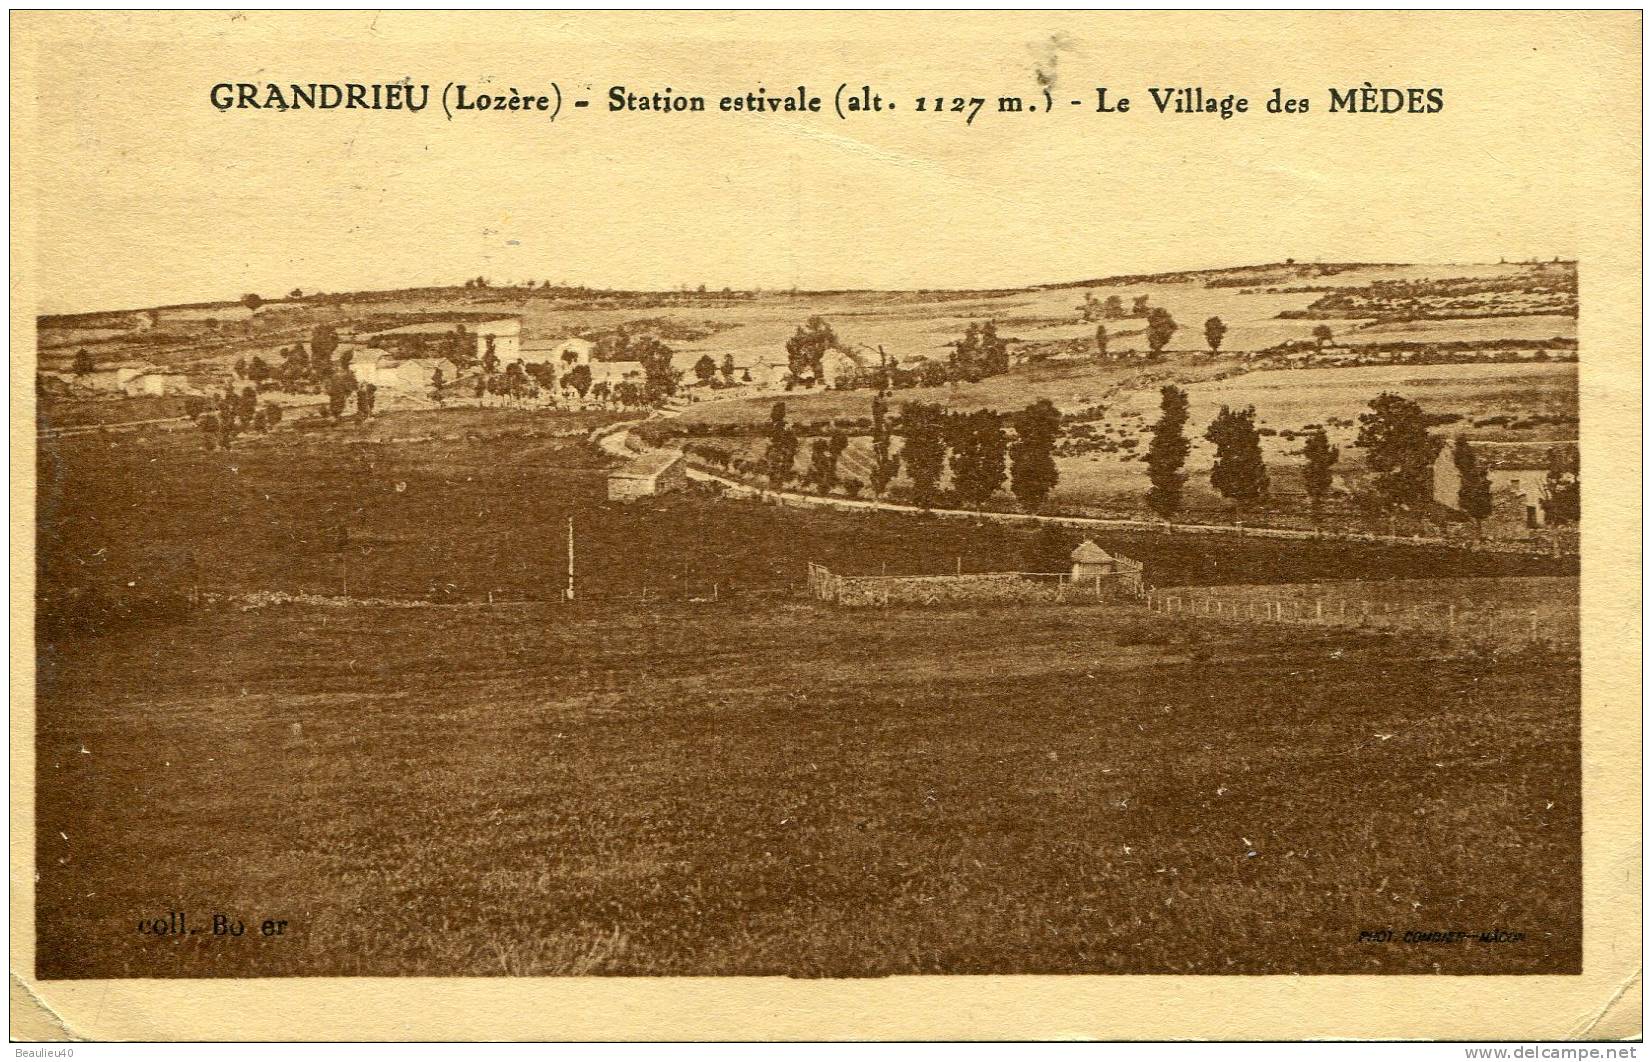 48 - GRANDRIEU -  STATION ESTIVALE (ALT 1127 M) LE VILLAGE DES MÈDES - Gandrieux Saint Amans